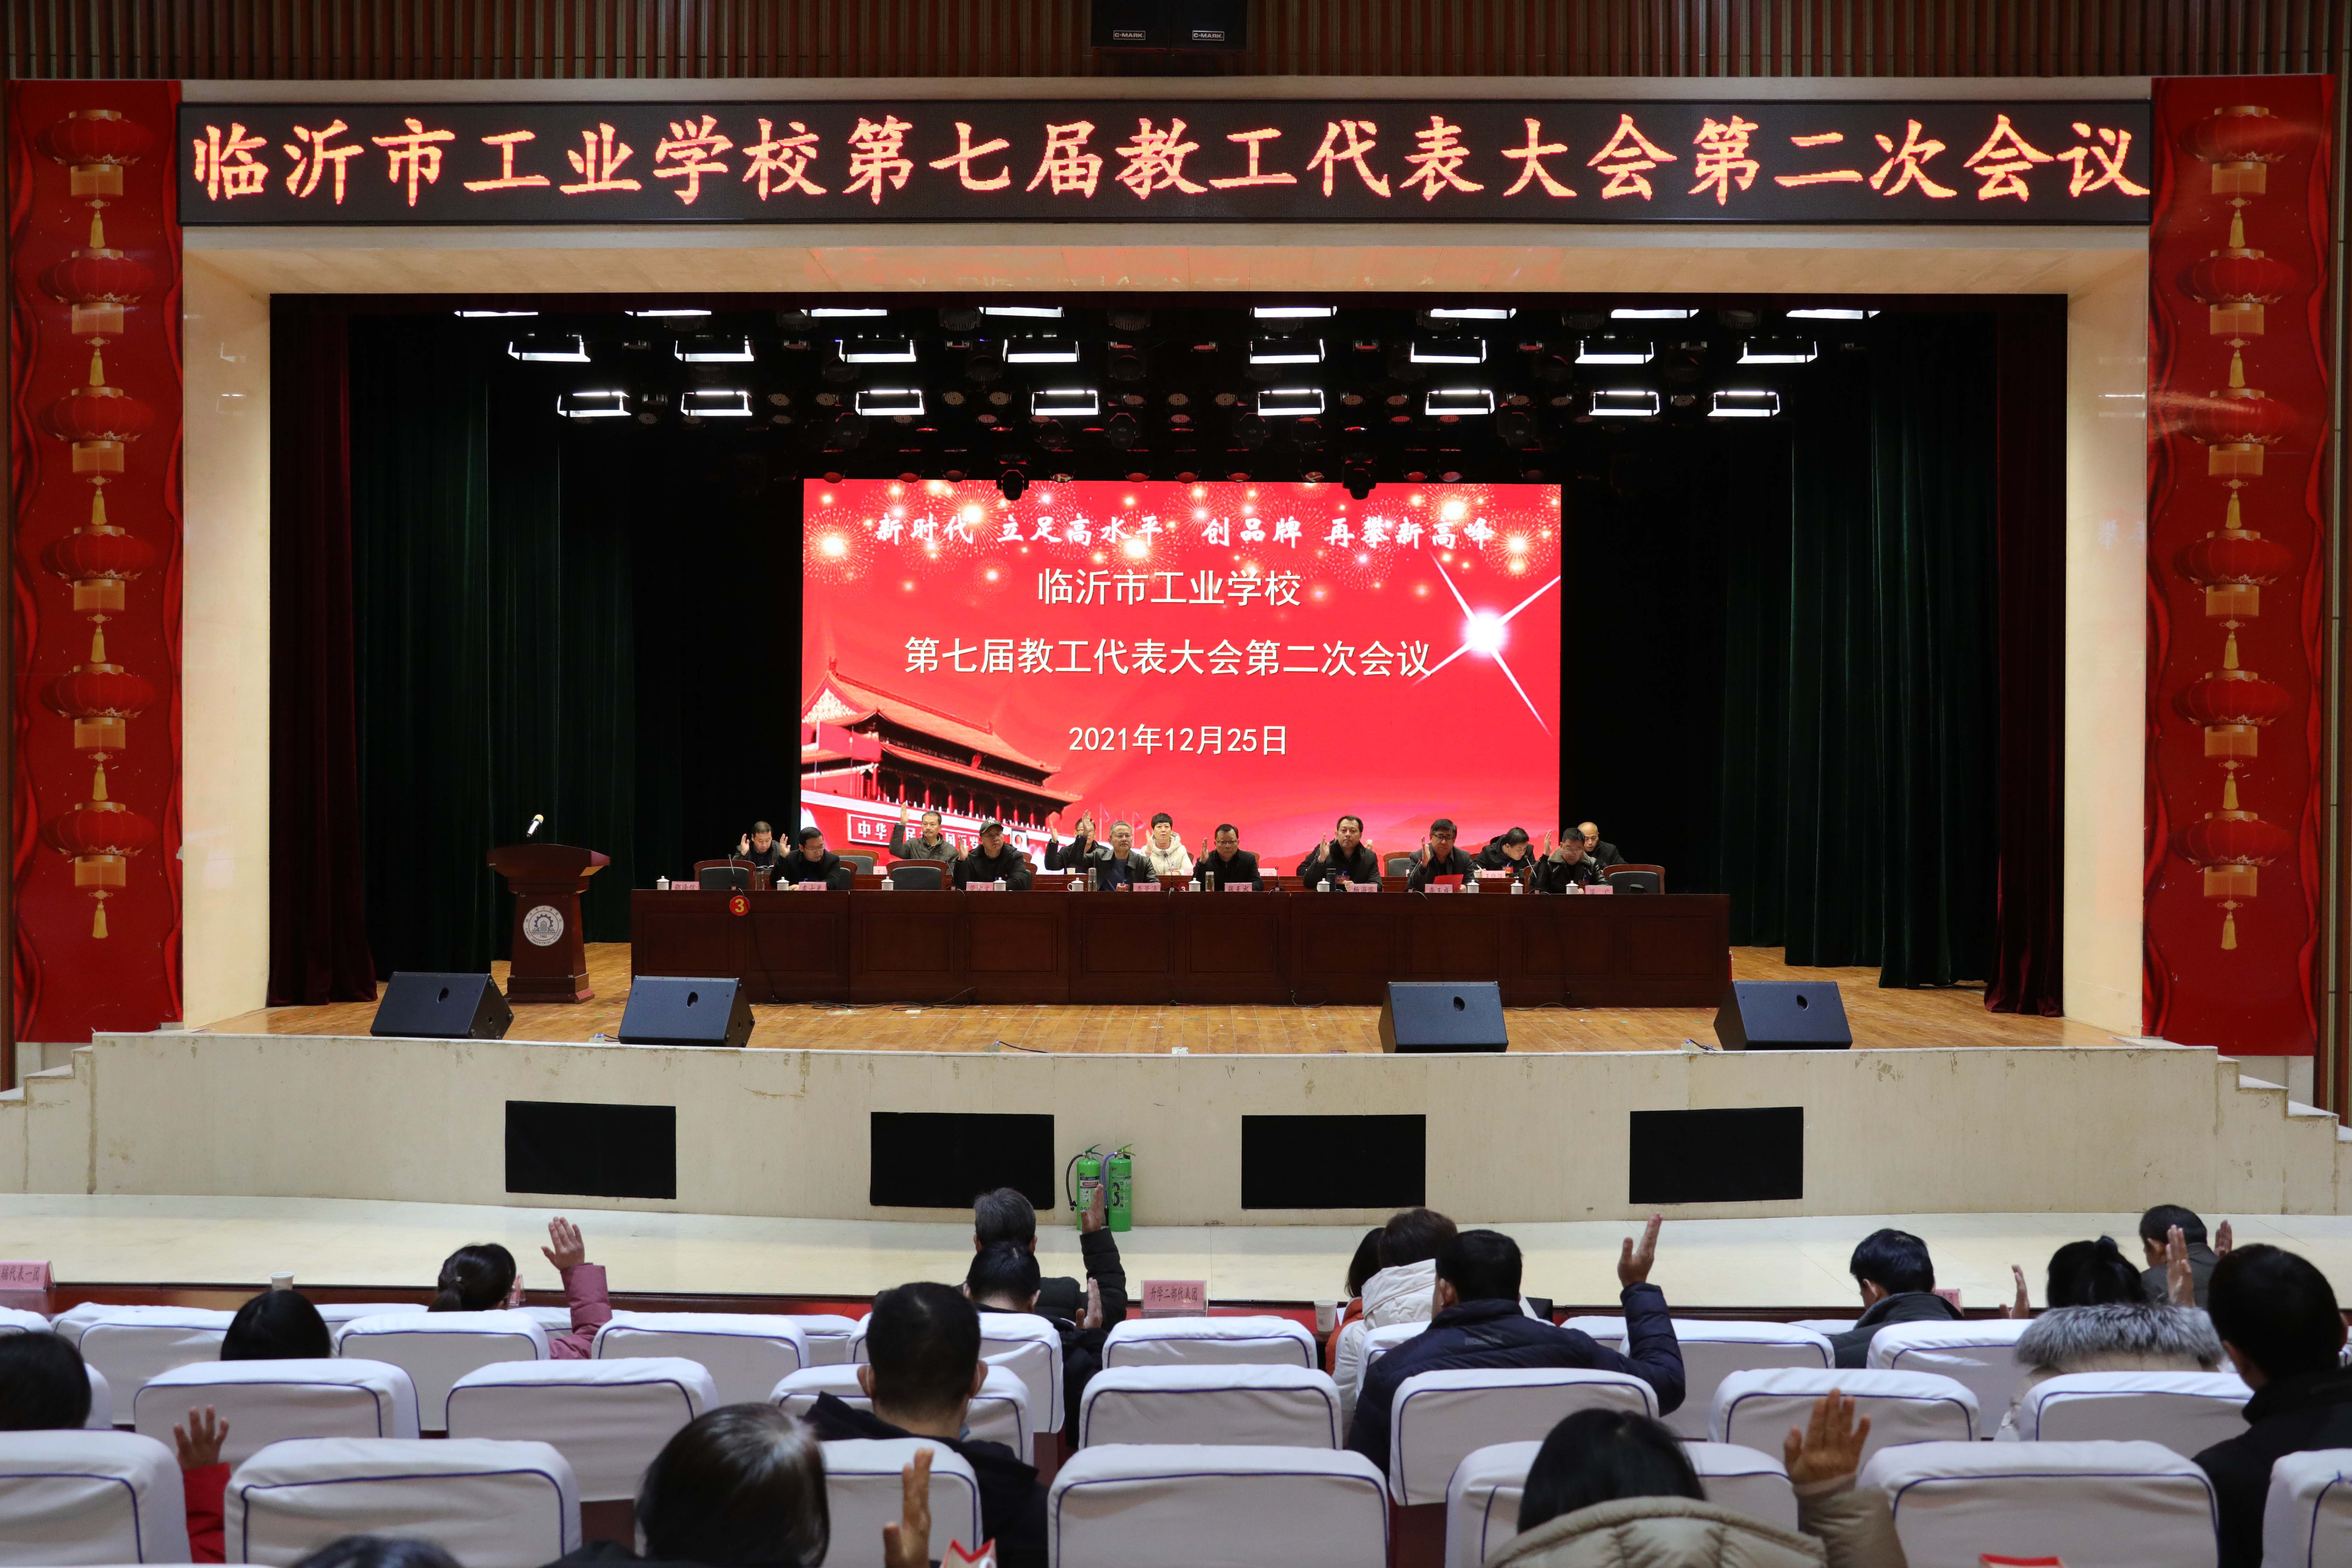 临沂市工业学校胜利召开第七届教工代表大会第二次会议